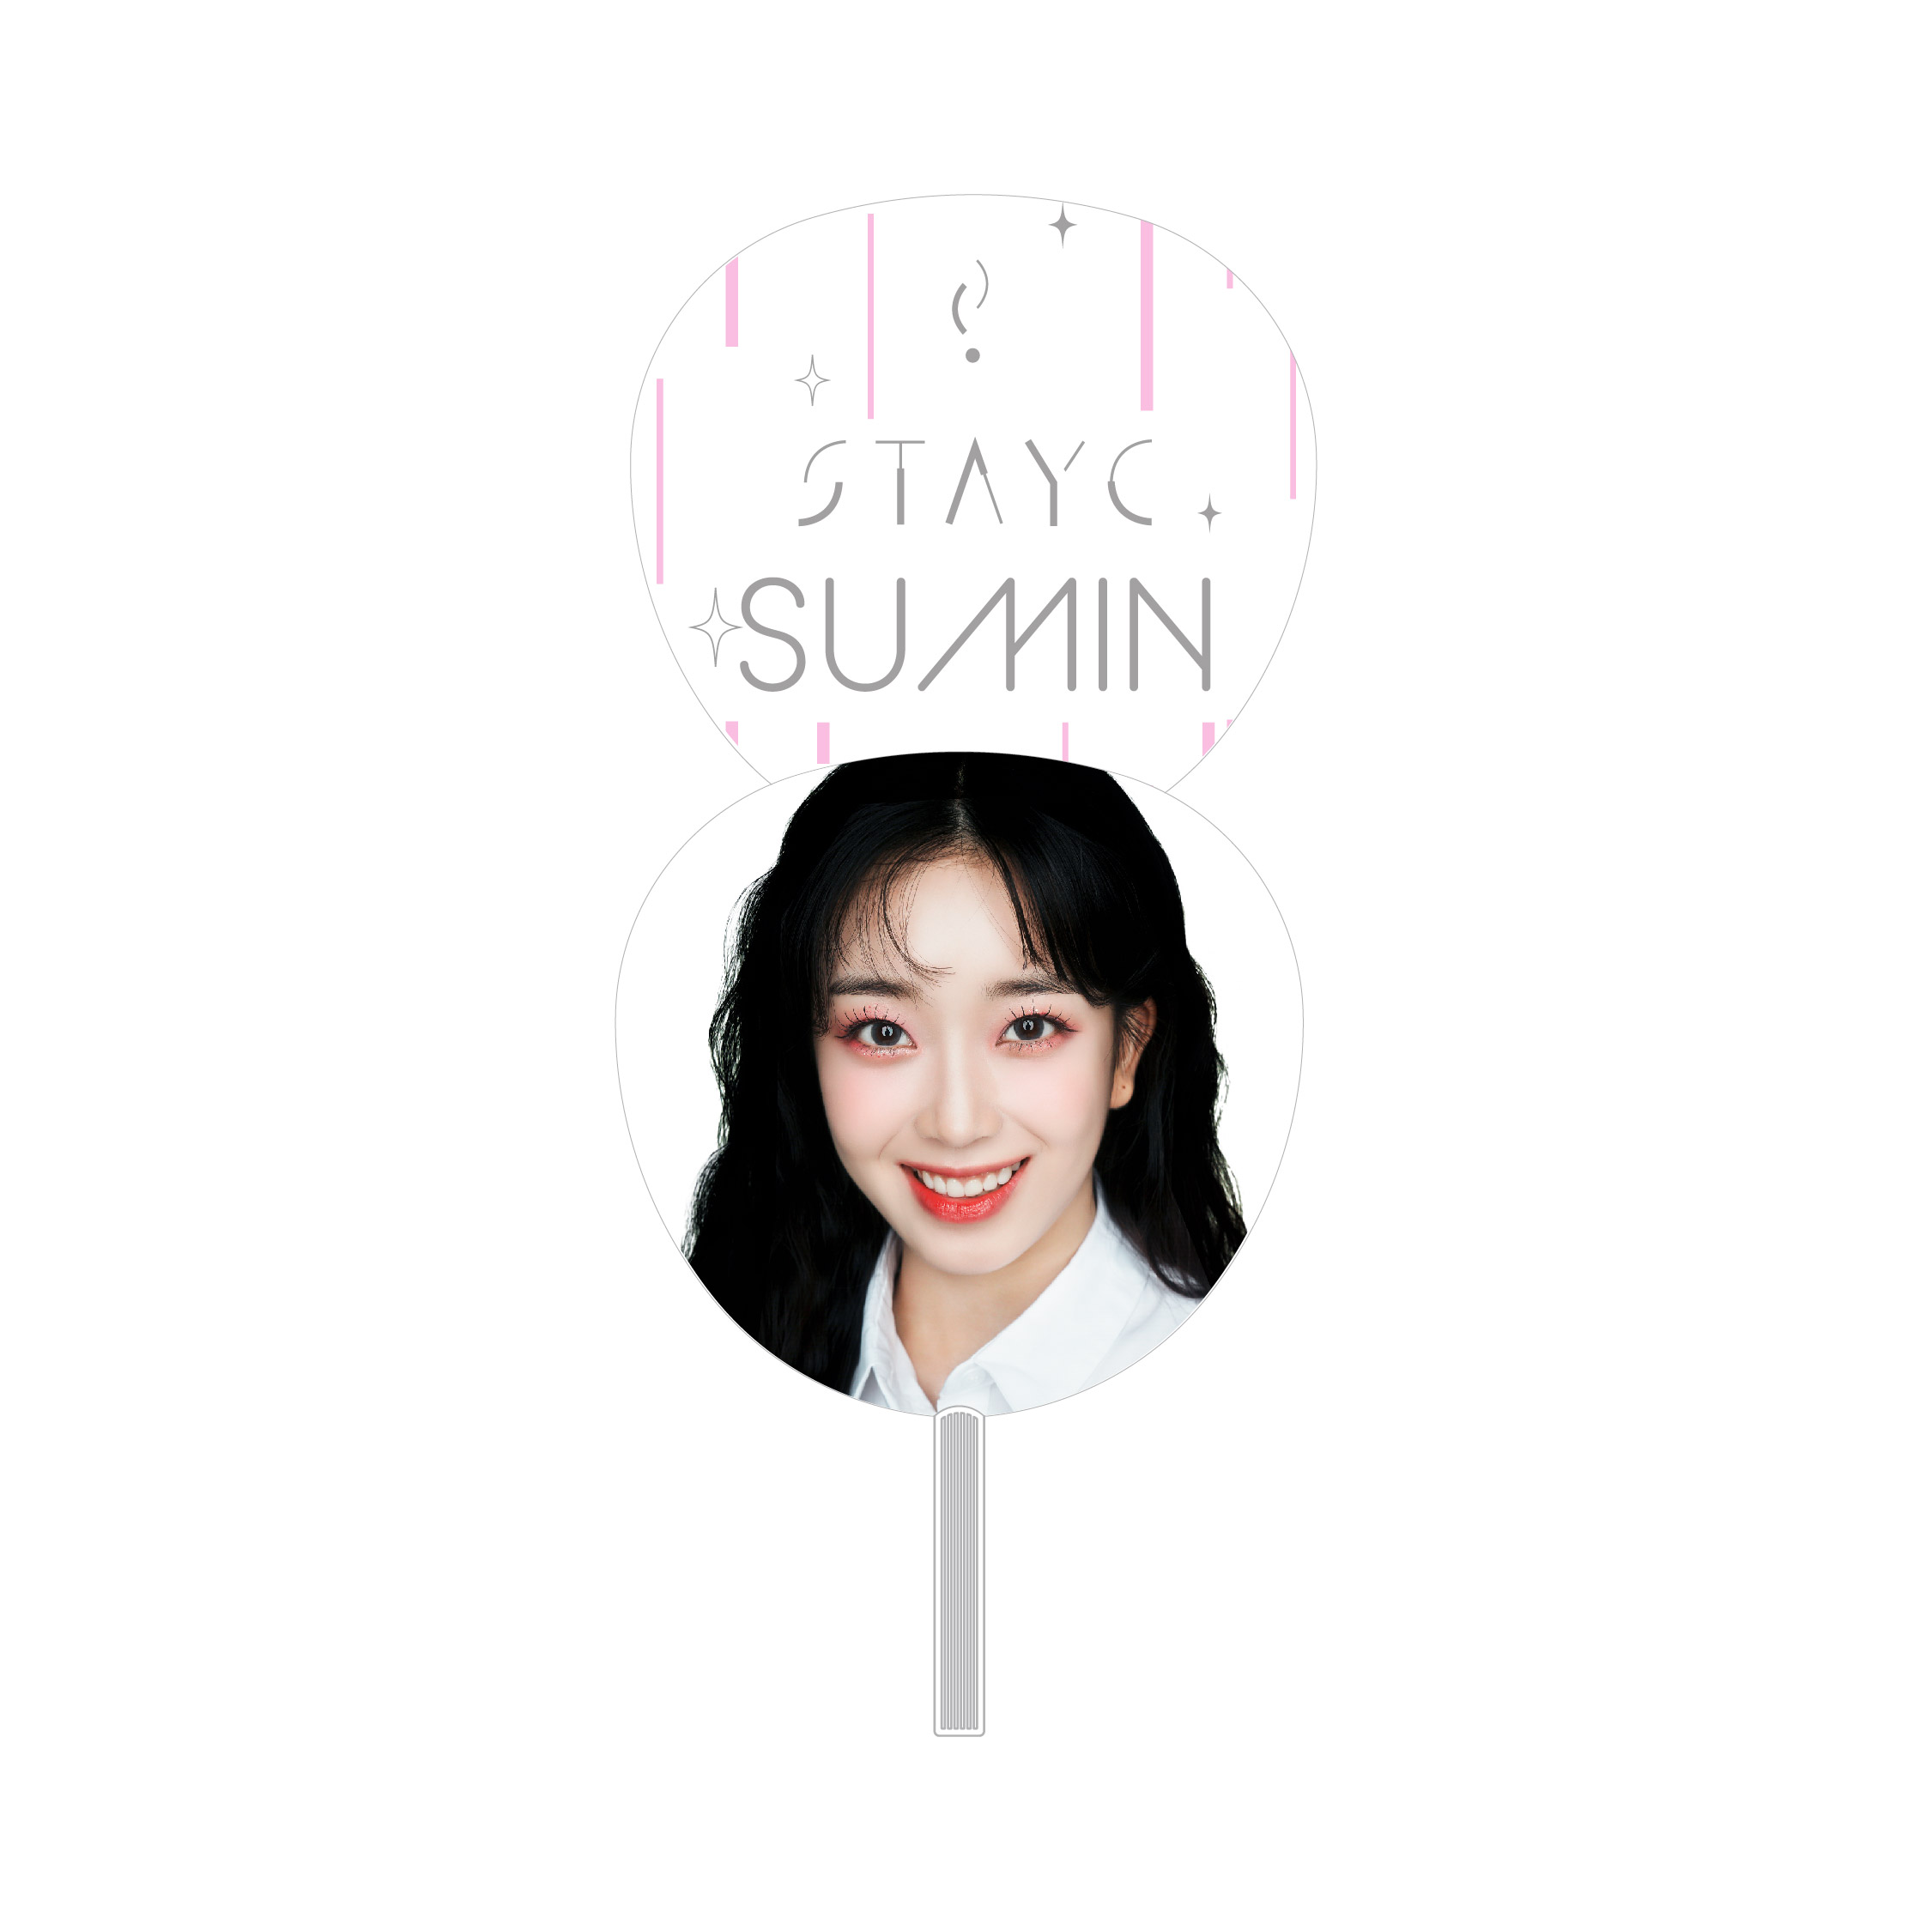 Fan 【Sumin】